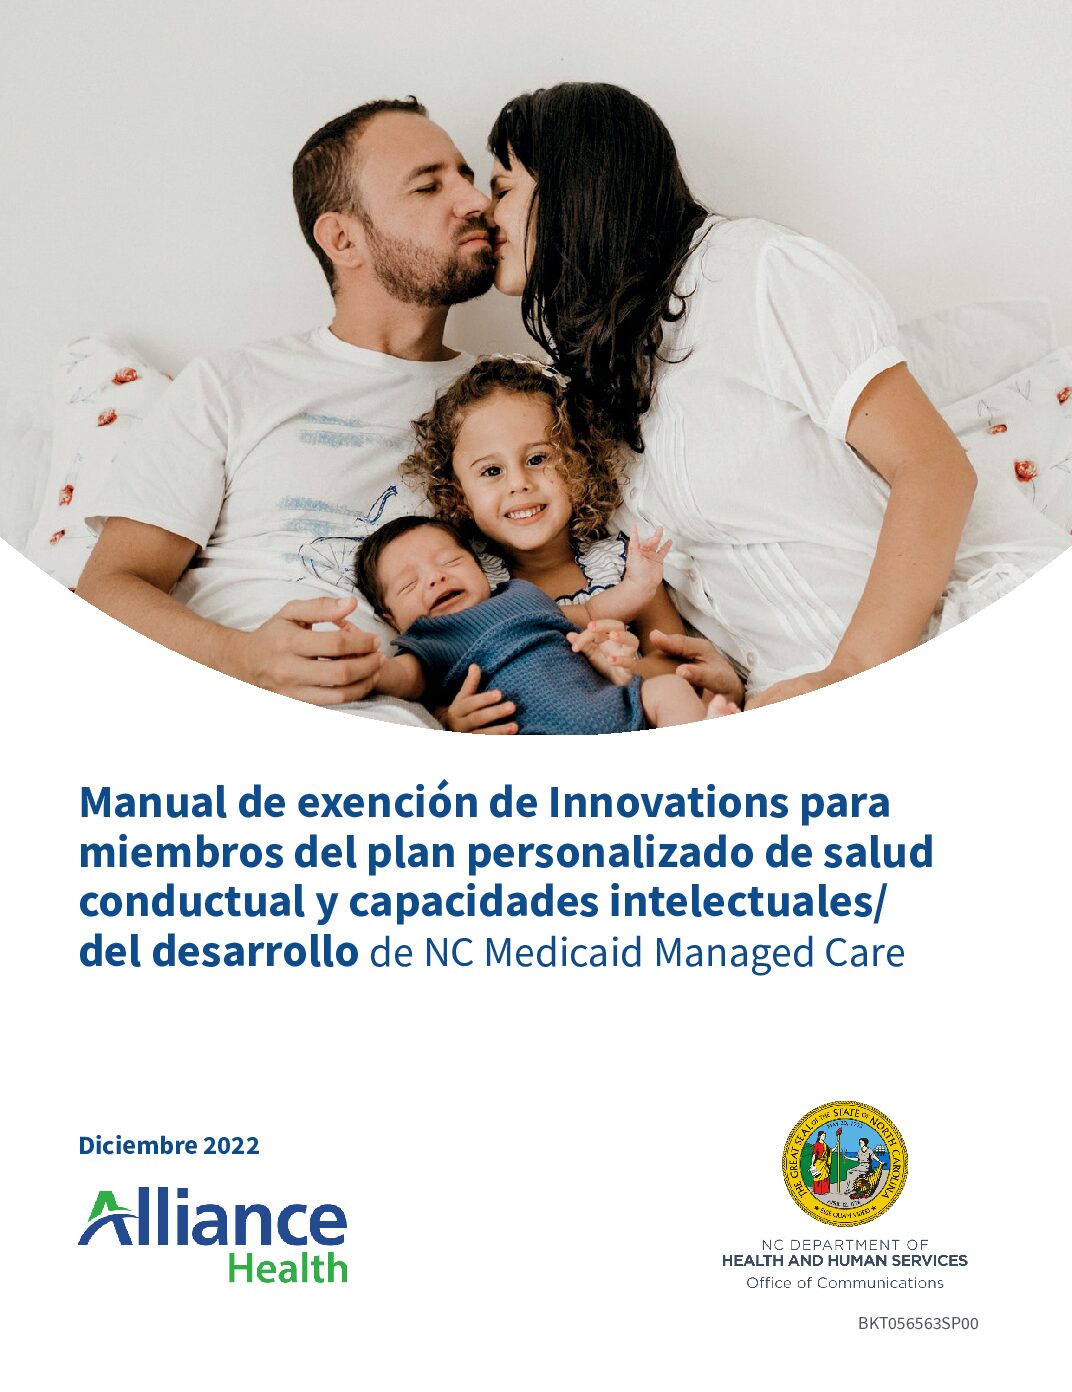 Manual de exención de Innovations para miembros del plan personalizado de salud conductual y capacidades intelectuales/del desarrollo de NC Medicaid Managed Care